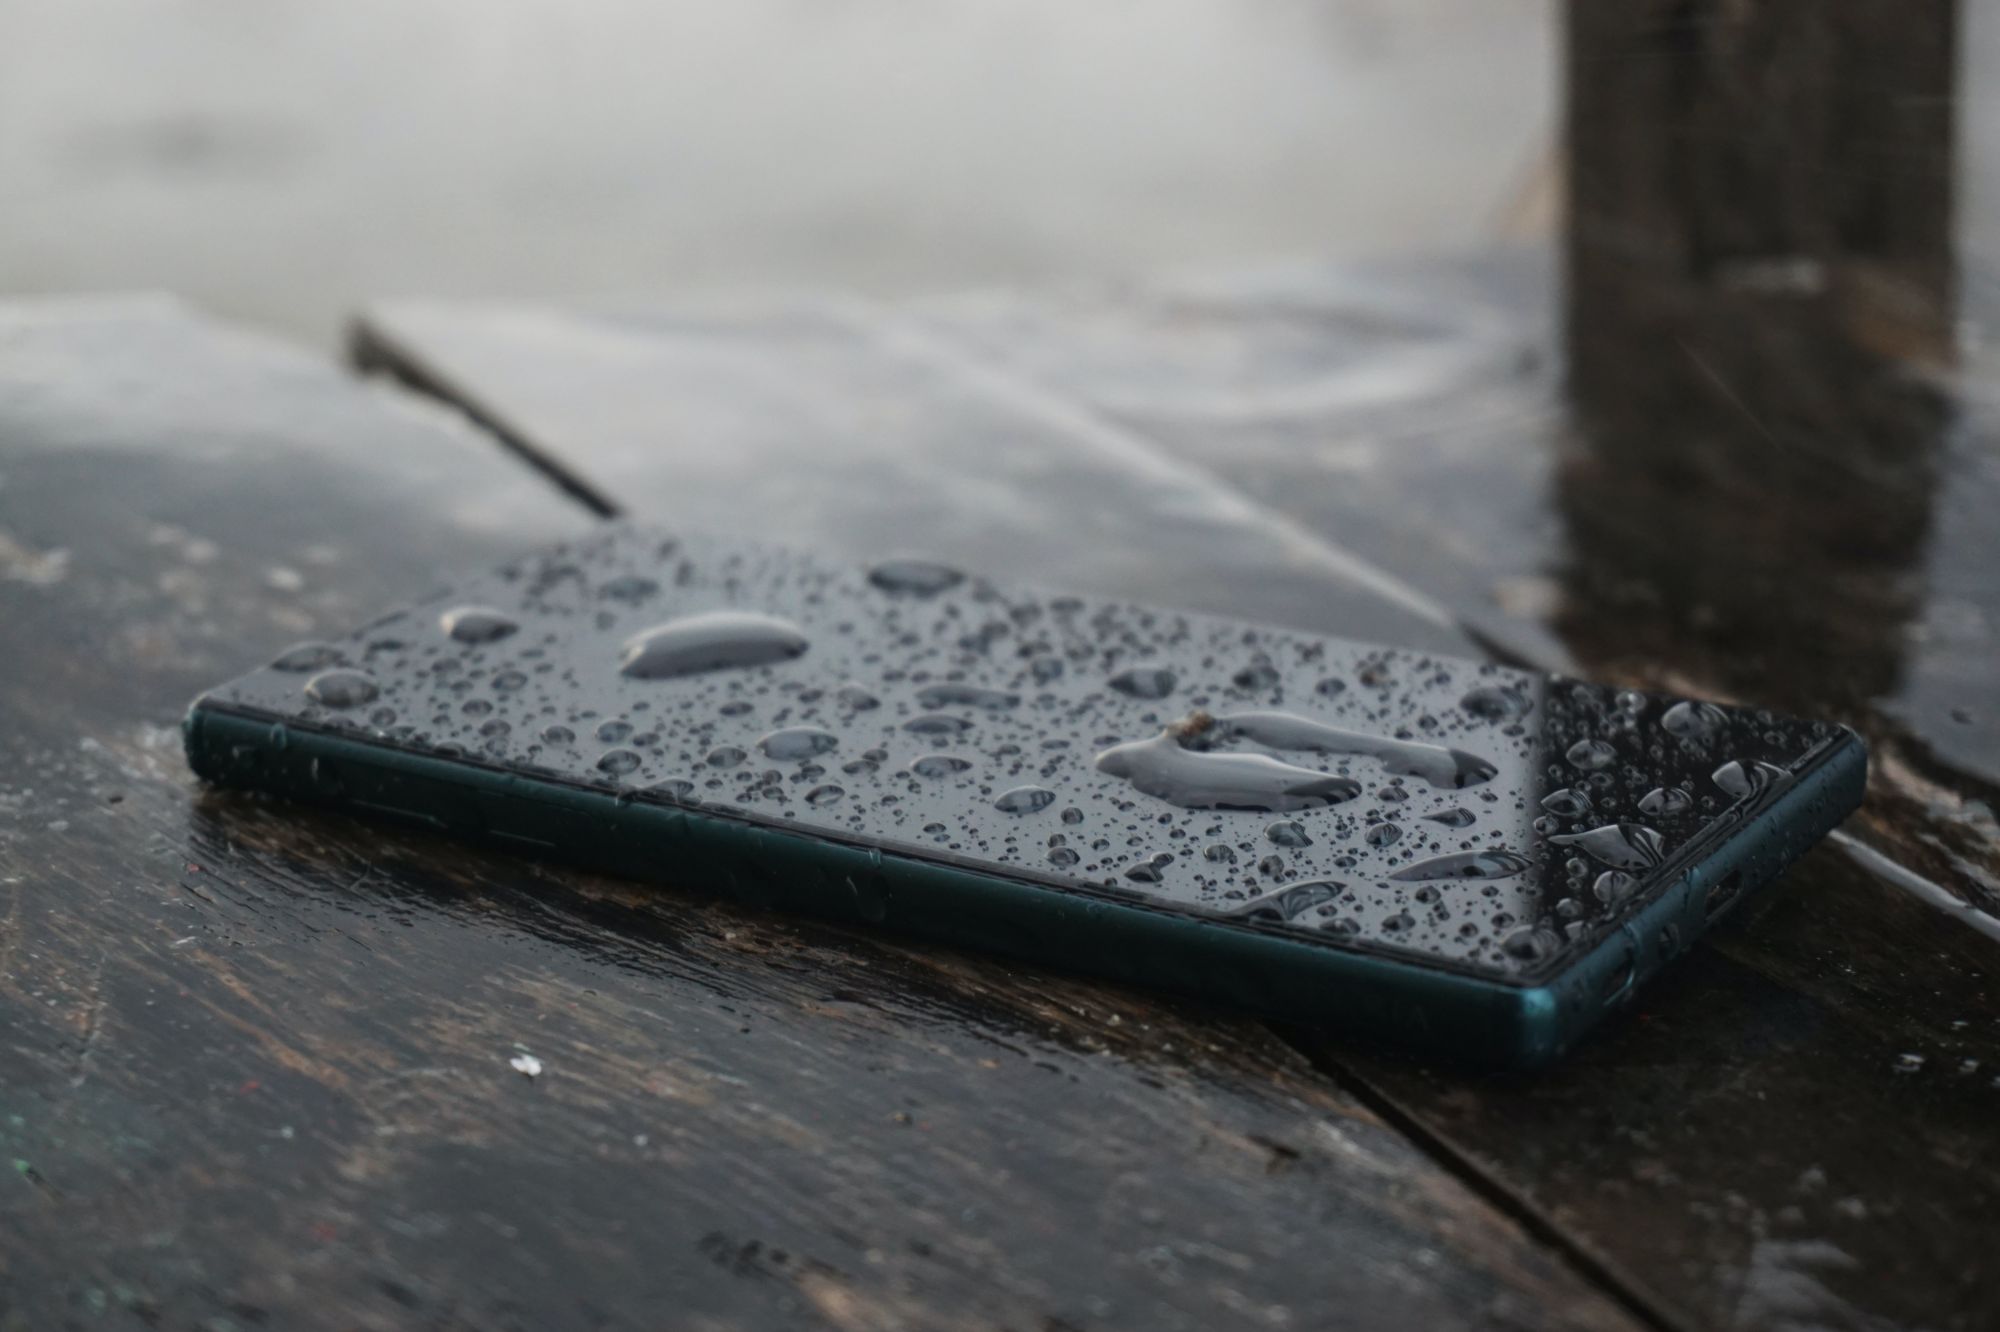 Телефон упал в воду: что делать и как спасти устройство